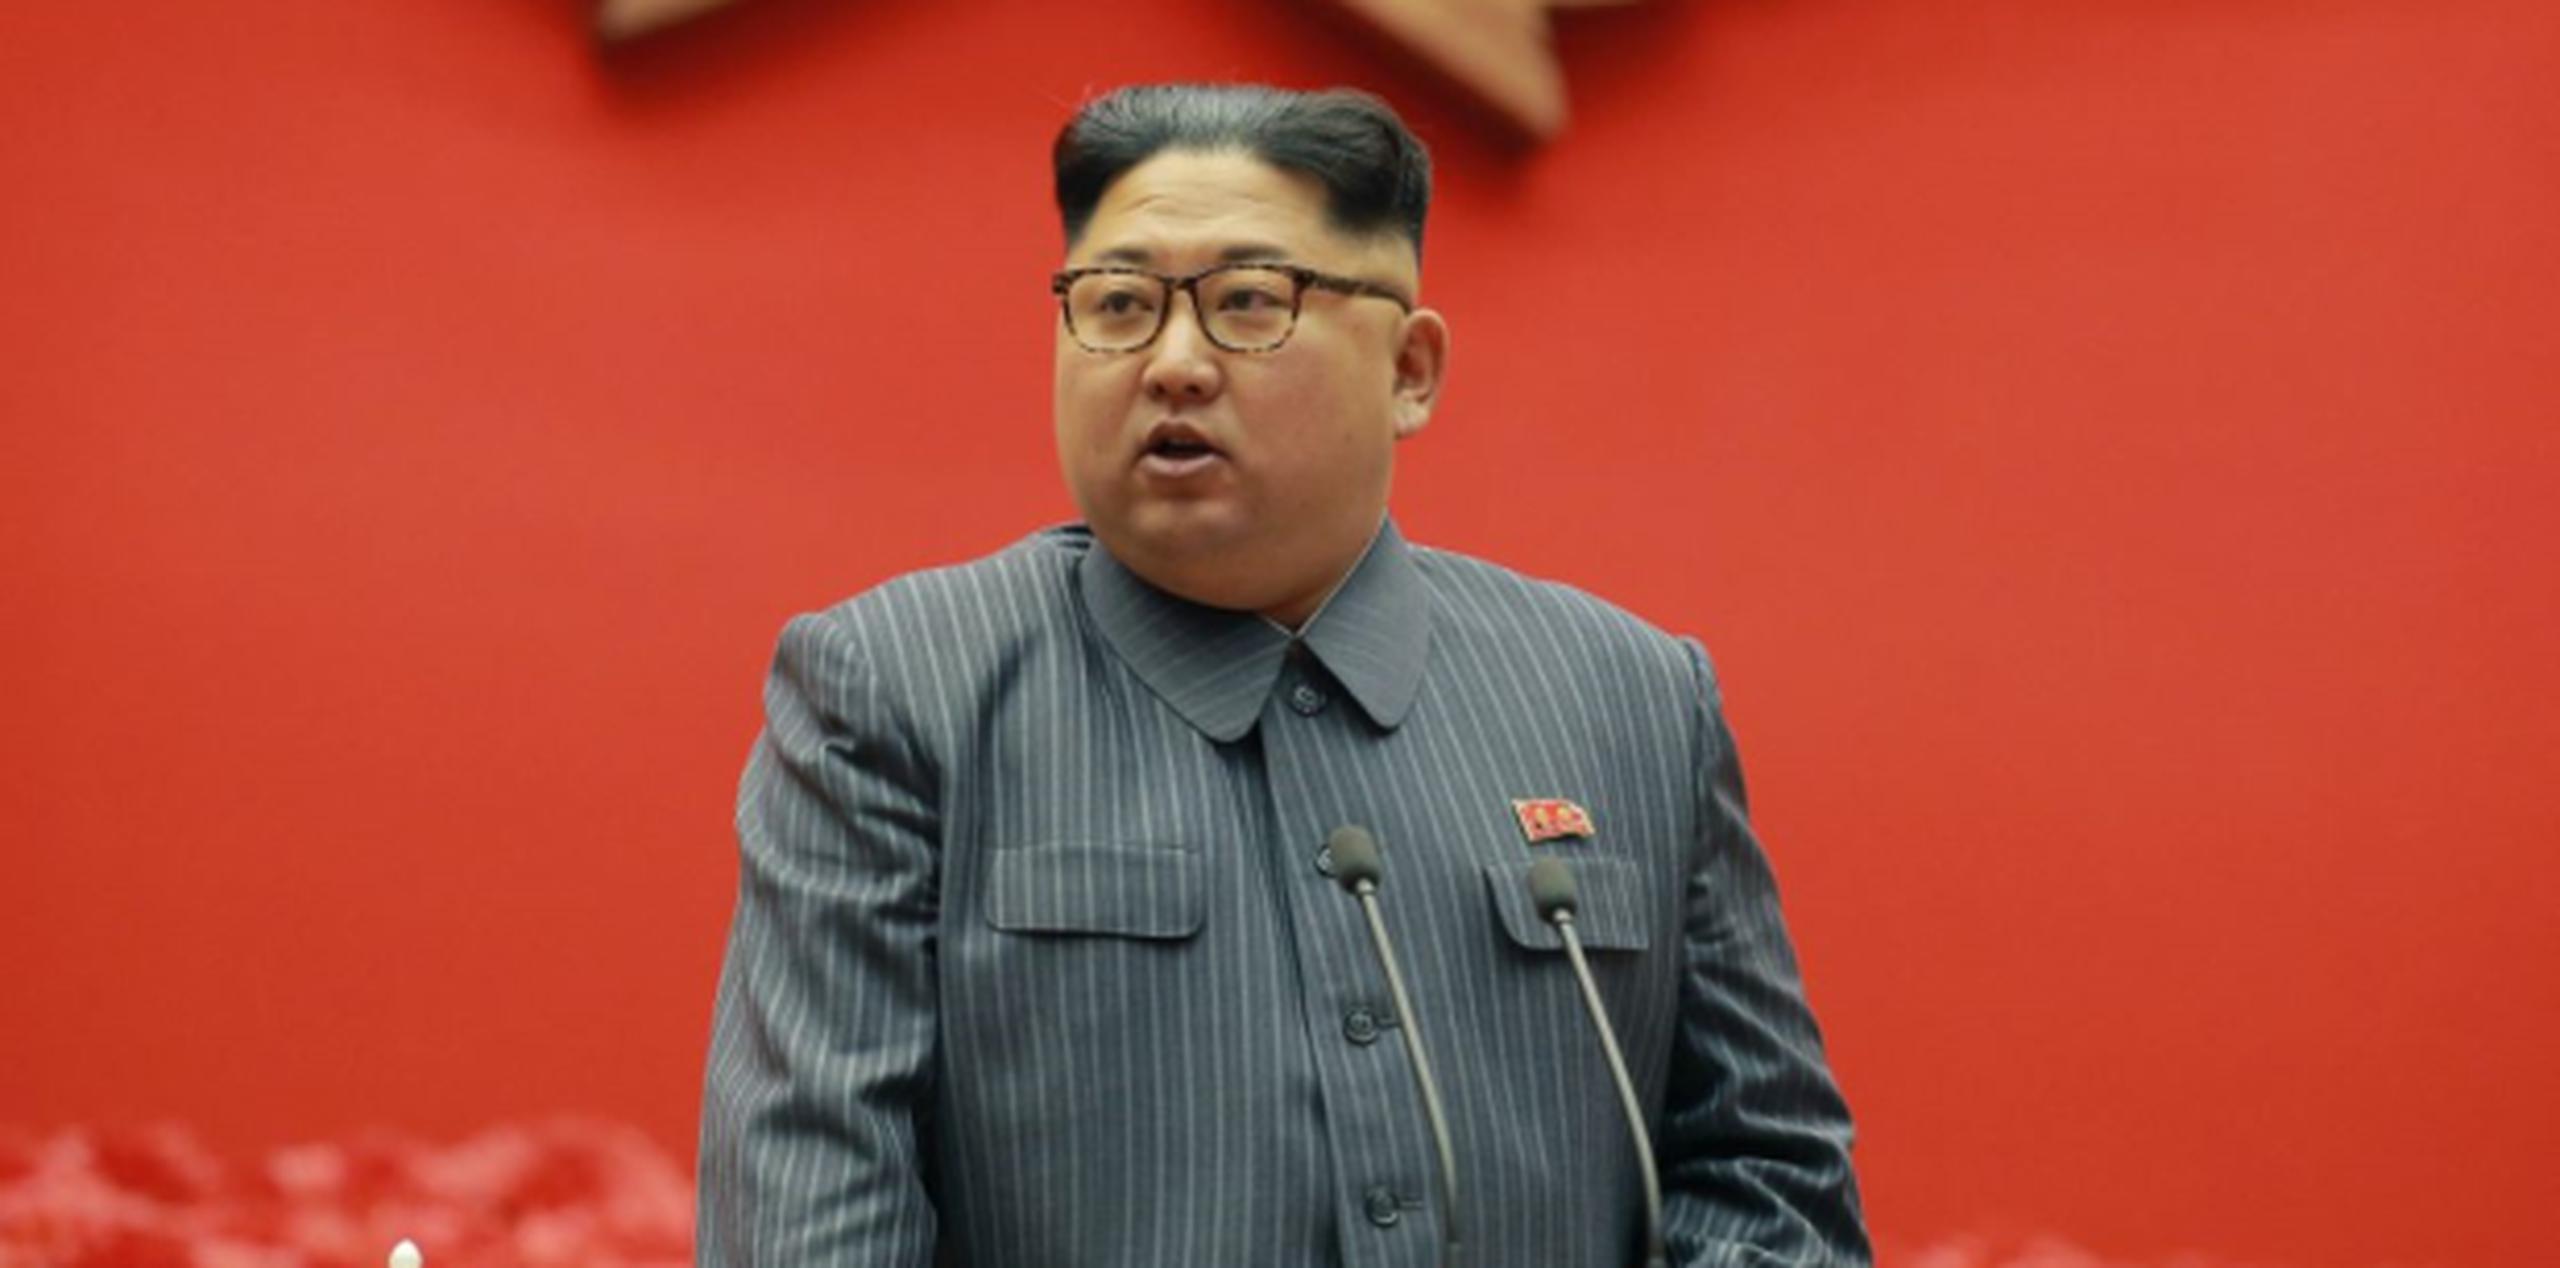 Las medidas equivalen a un “bloqueo económico completo” de Corea del Norte, afirmó el Ministerio. (AP)